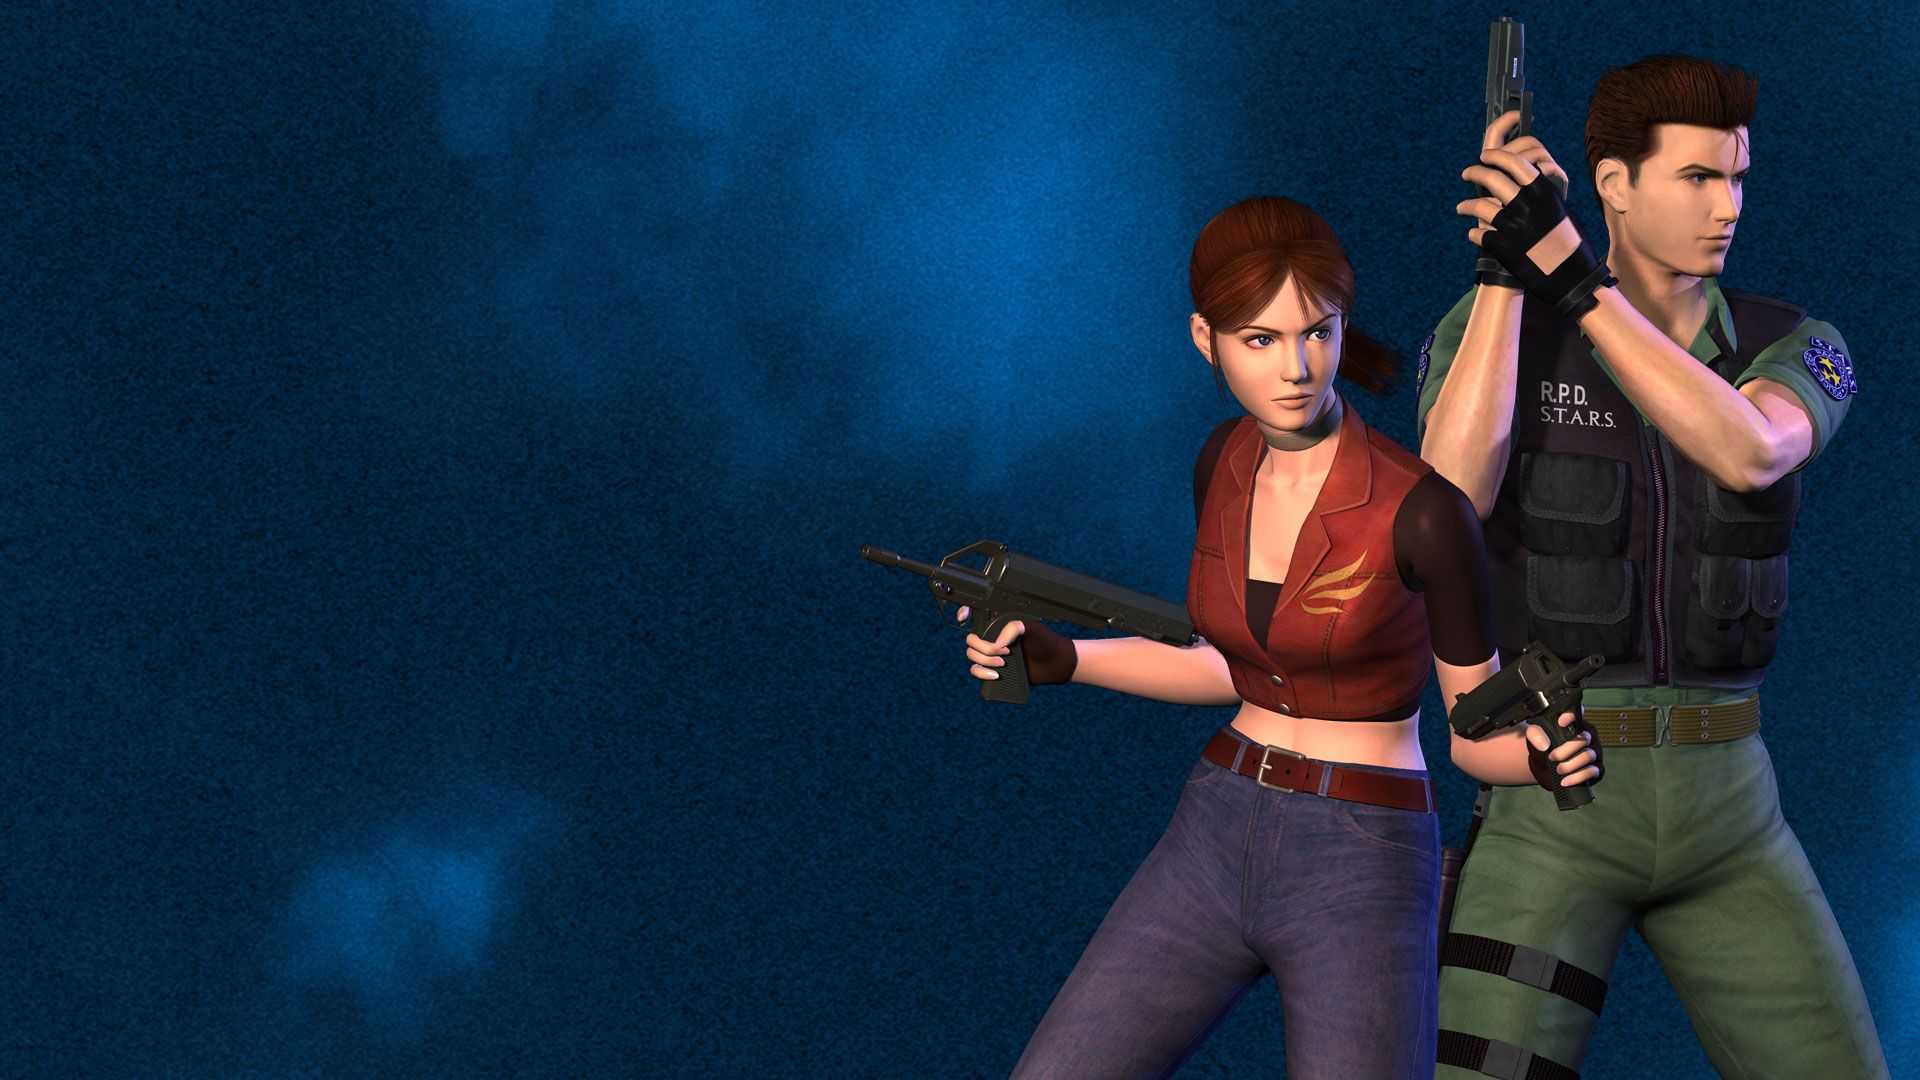 Resident evil code: veronica x hd - обзор игры, новости, дата выхода, системные требования, подборка похожих игр - cq